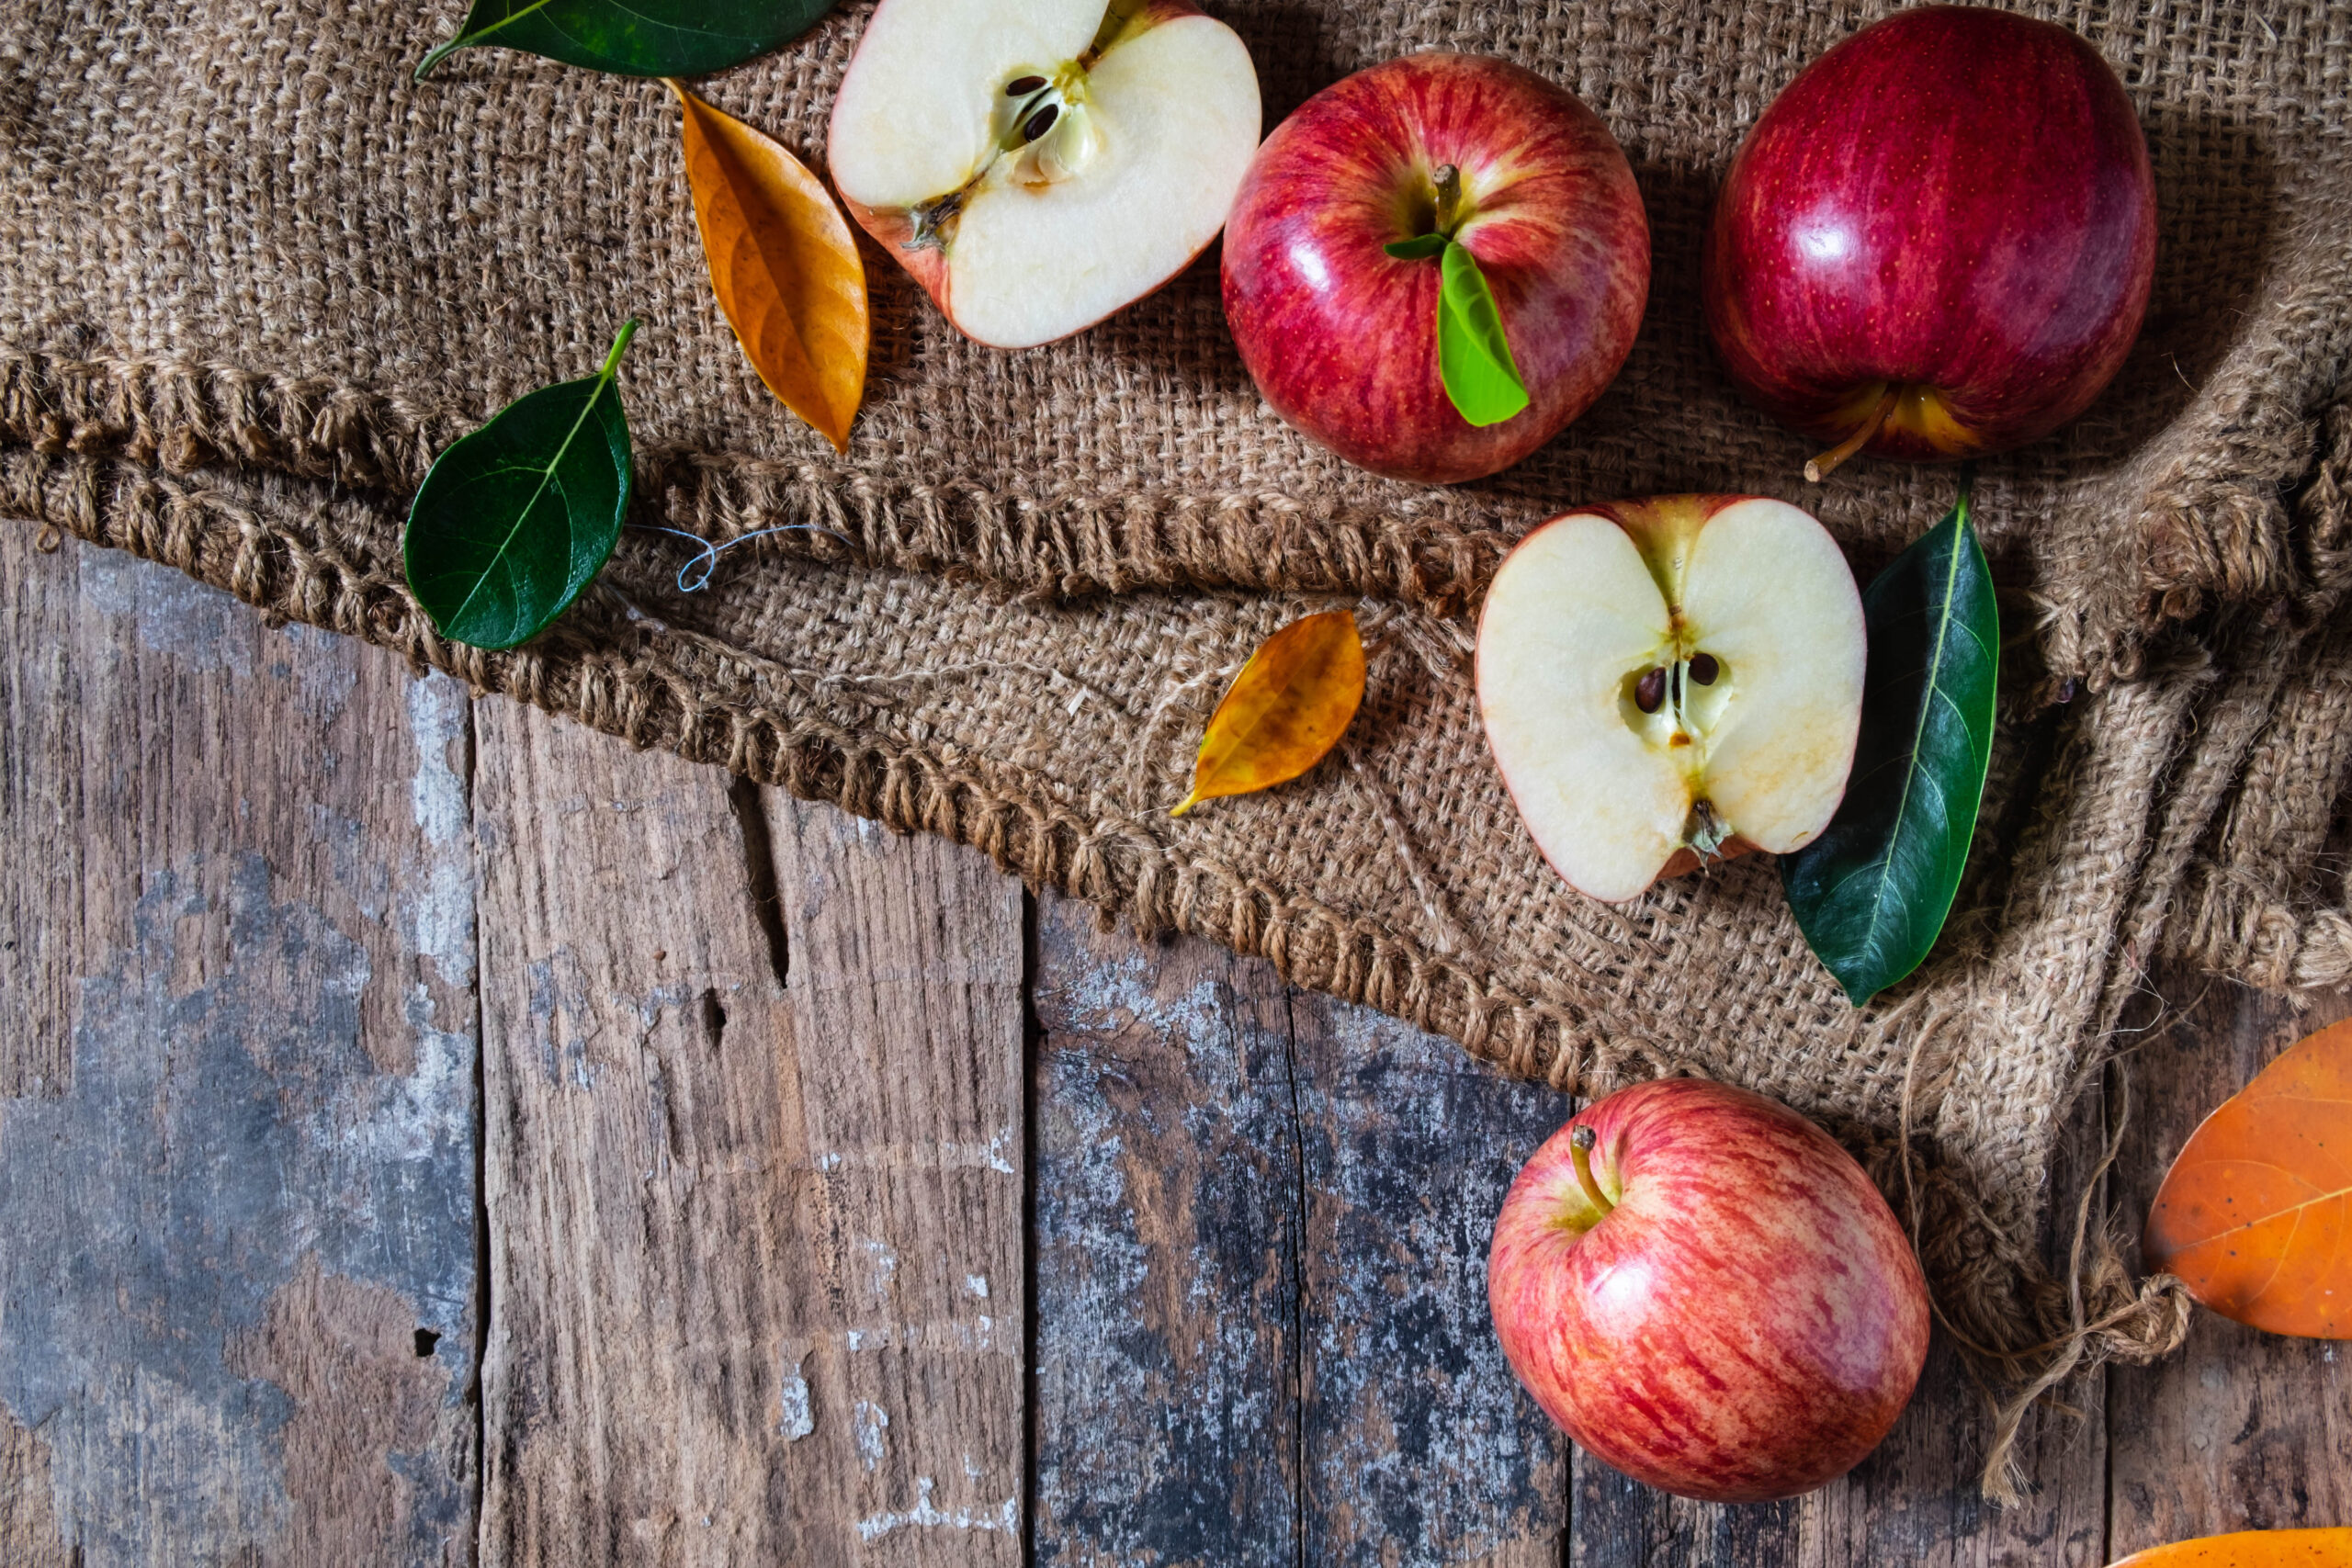 Na tym ujmującym obrazku widzimy soczyste jabłka, starannie ułożone w drewnianej beczce, gotowe do procesu kiszenia. Ich jasne, intensywne kolory oraz świeżość emanują obietnicą wspaniałego smaku i korzyści zdrowotnych, które płyną z tego tradycyjnego sposobu przechowywania.